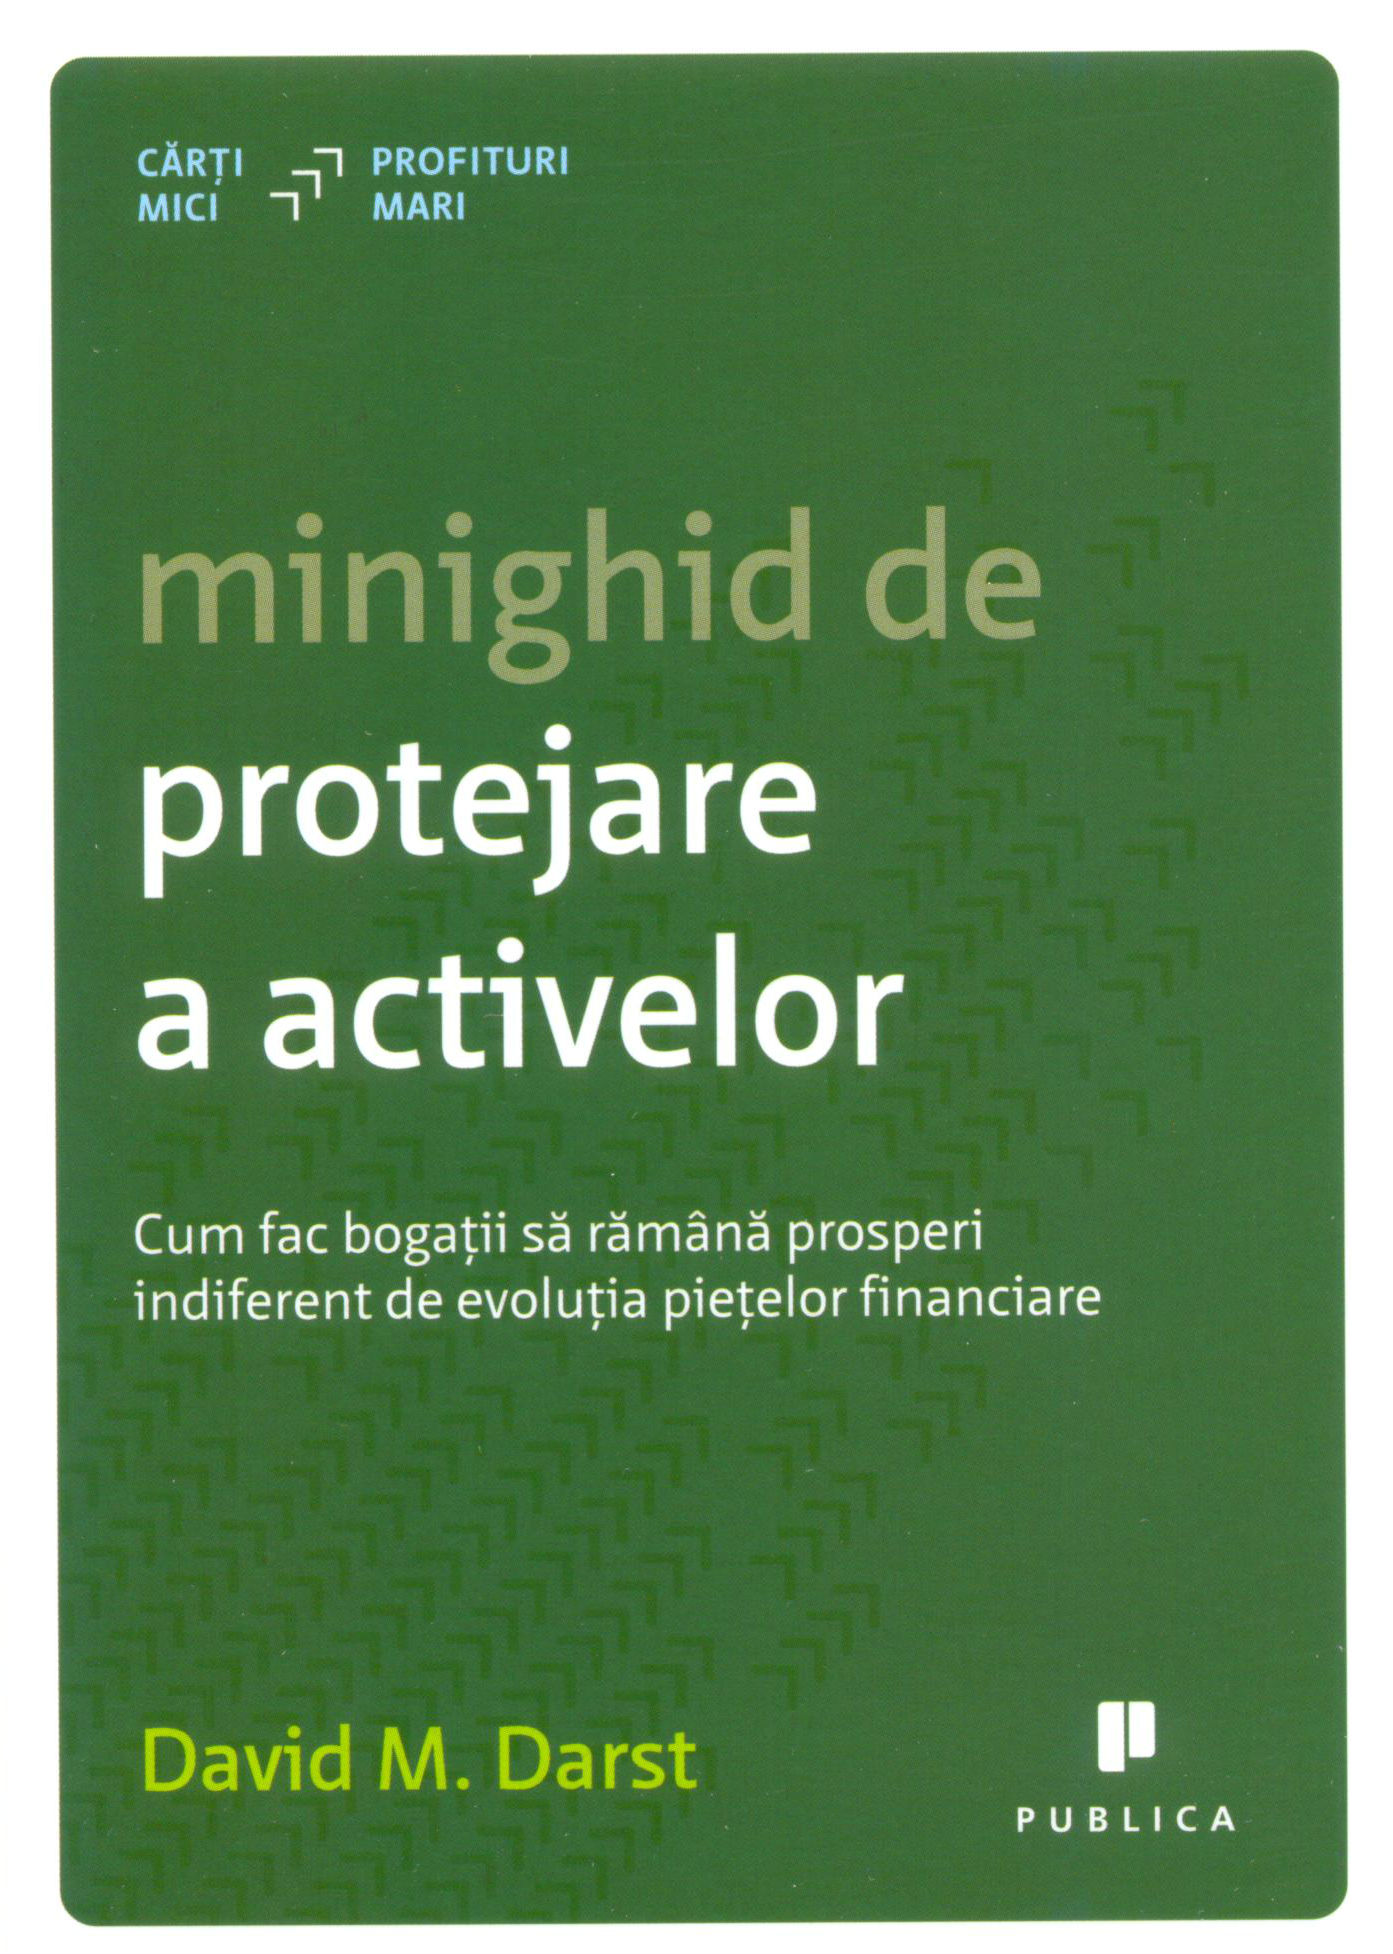 Minighid de protejare a activelor